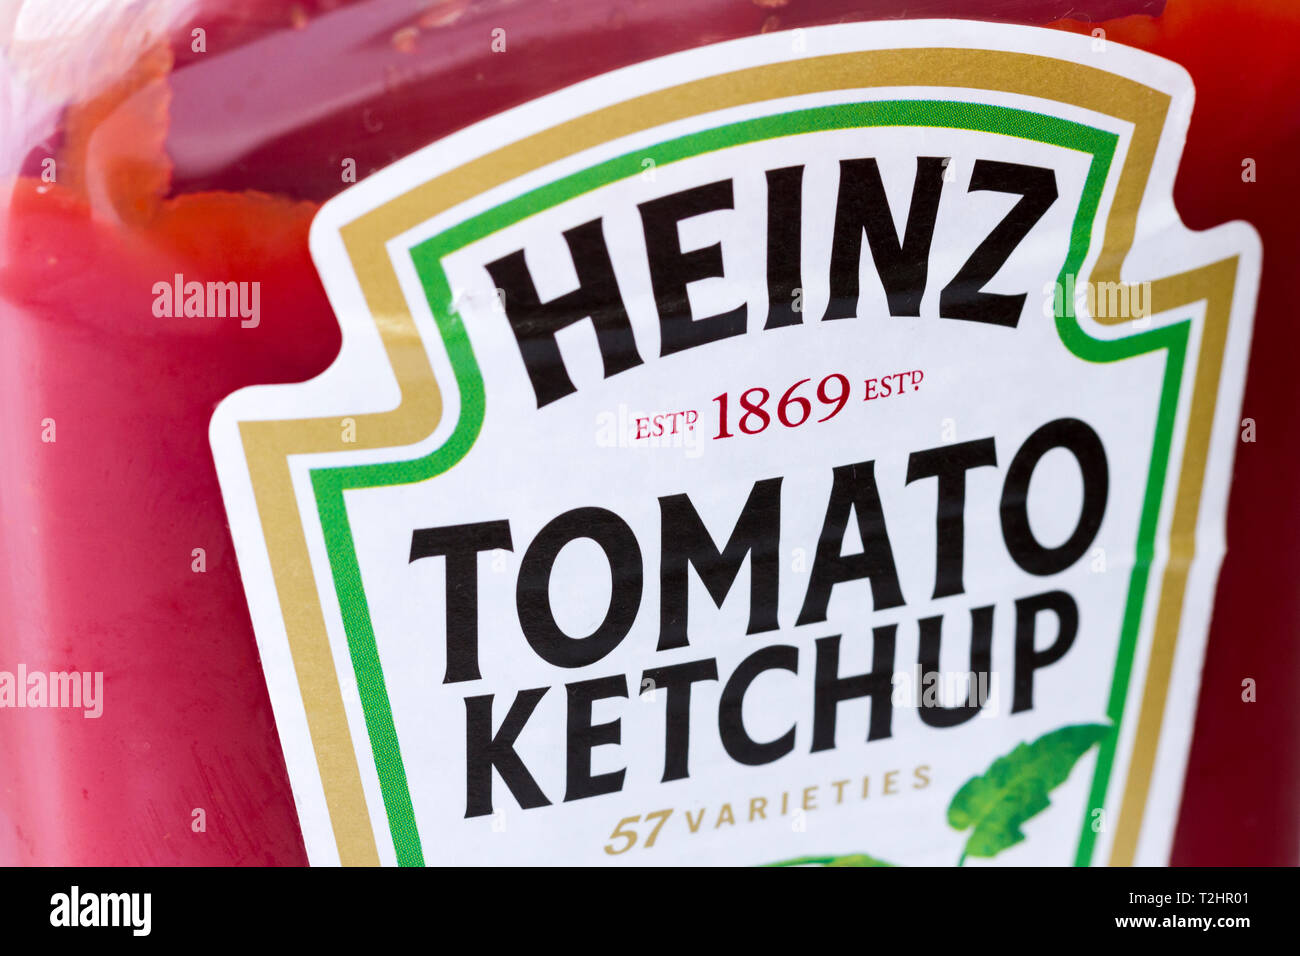 Heinz Ketchup, libre d'étiquette de la bouteille en plastique Banque D'Images